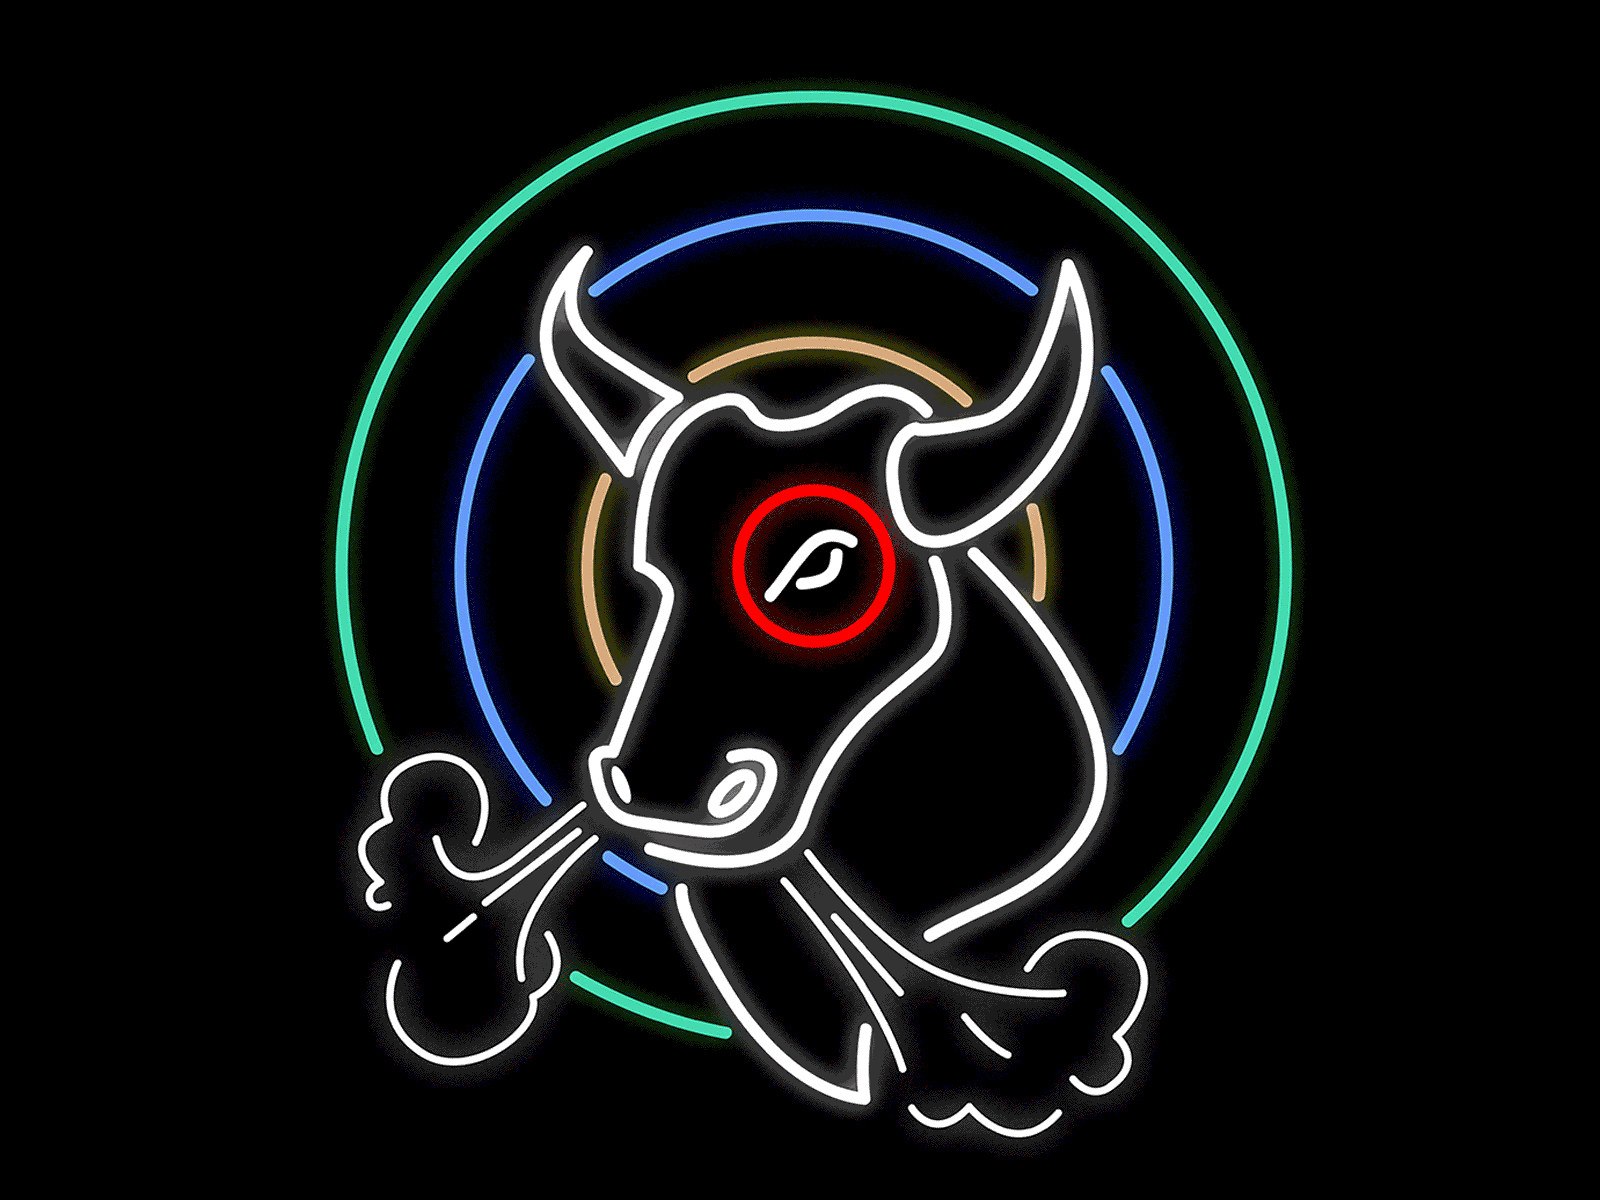 BULLSEYE bull bullseye illustration motion neon neon sign retro target